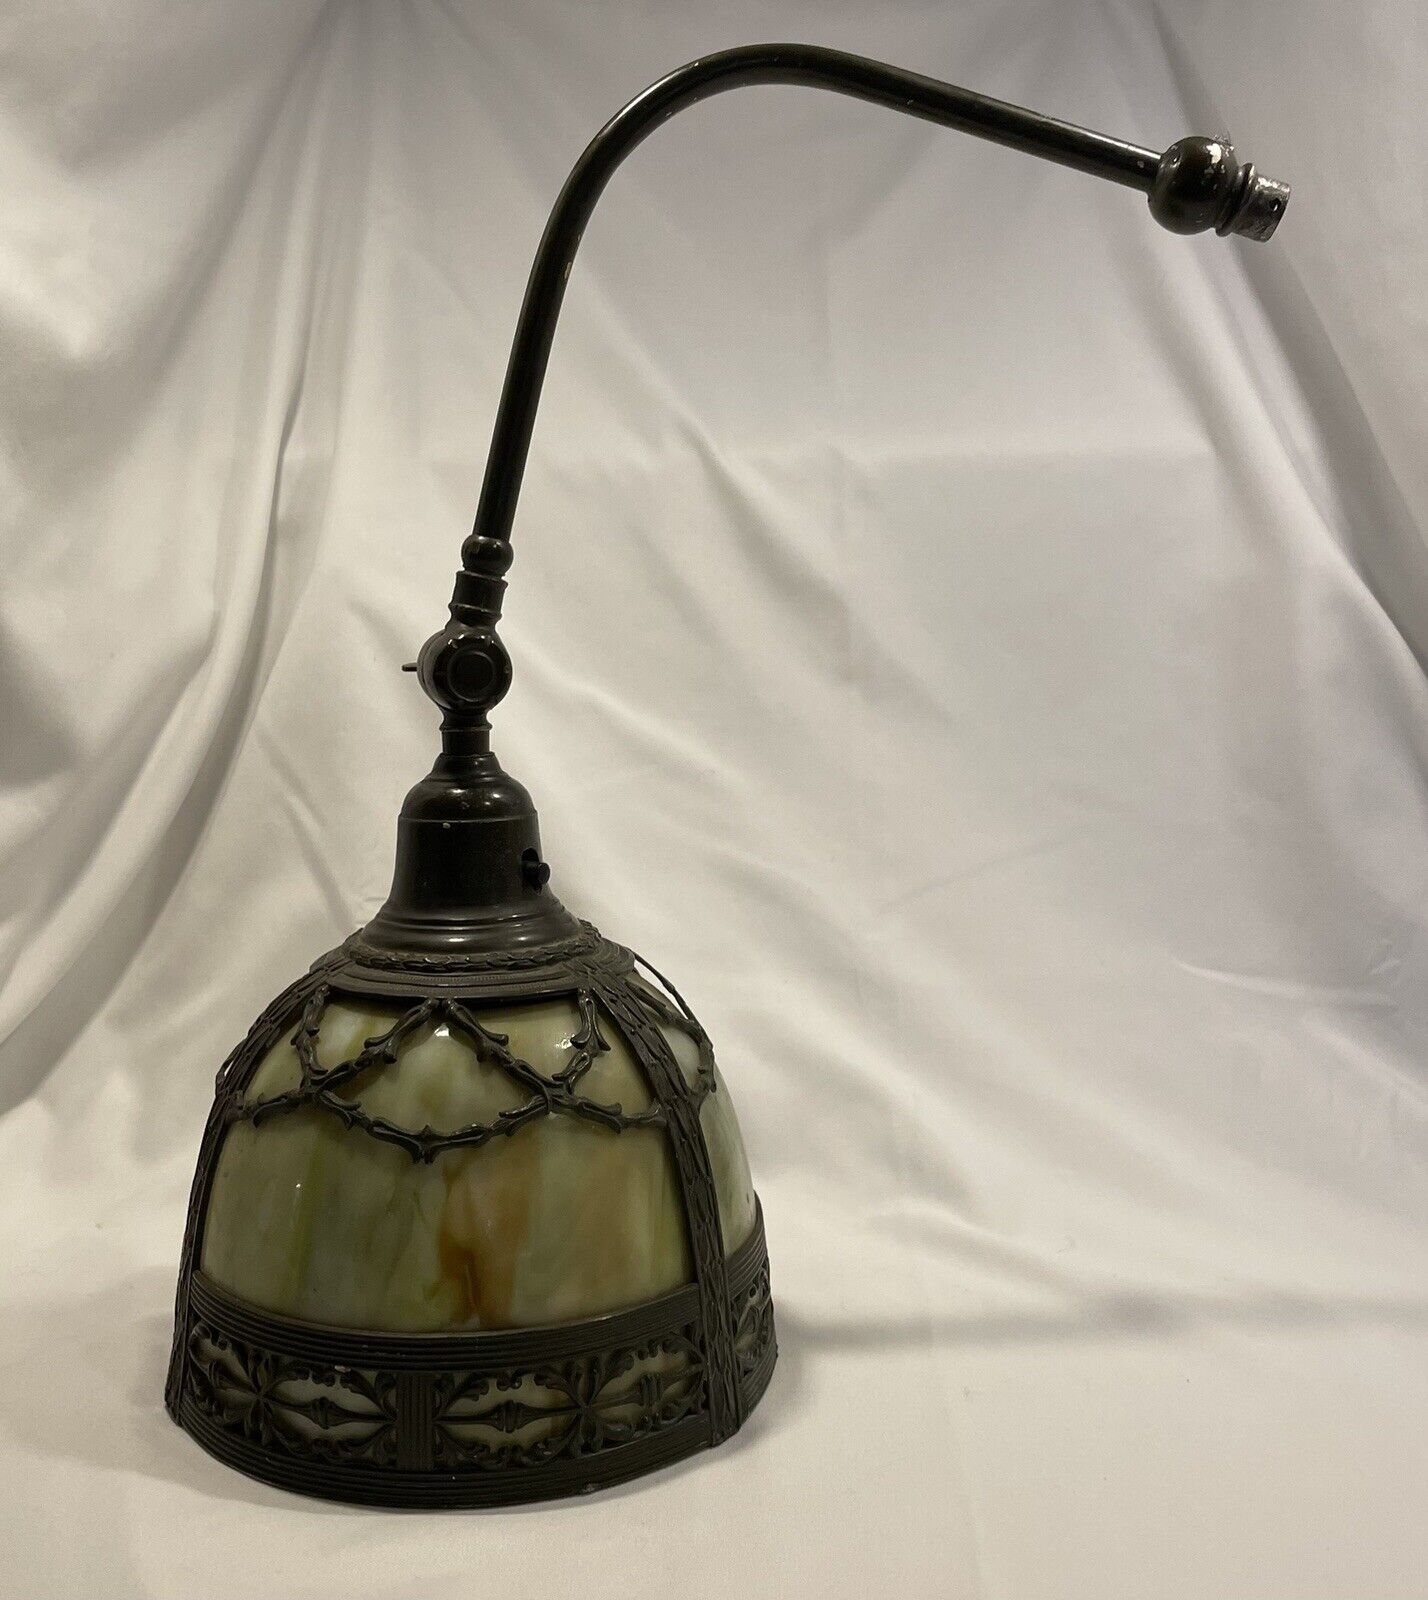 Art Deco Nouveau Lamp Shade Slag Glass w/ Bridge Arm - Used Antique Condition